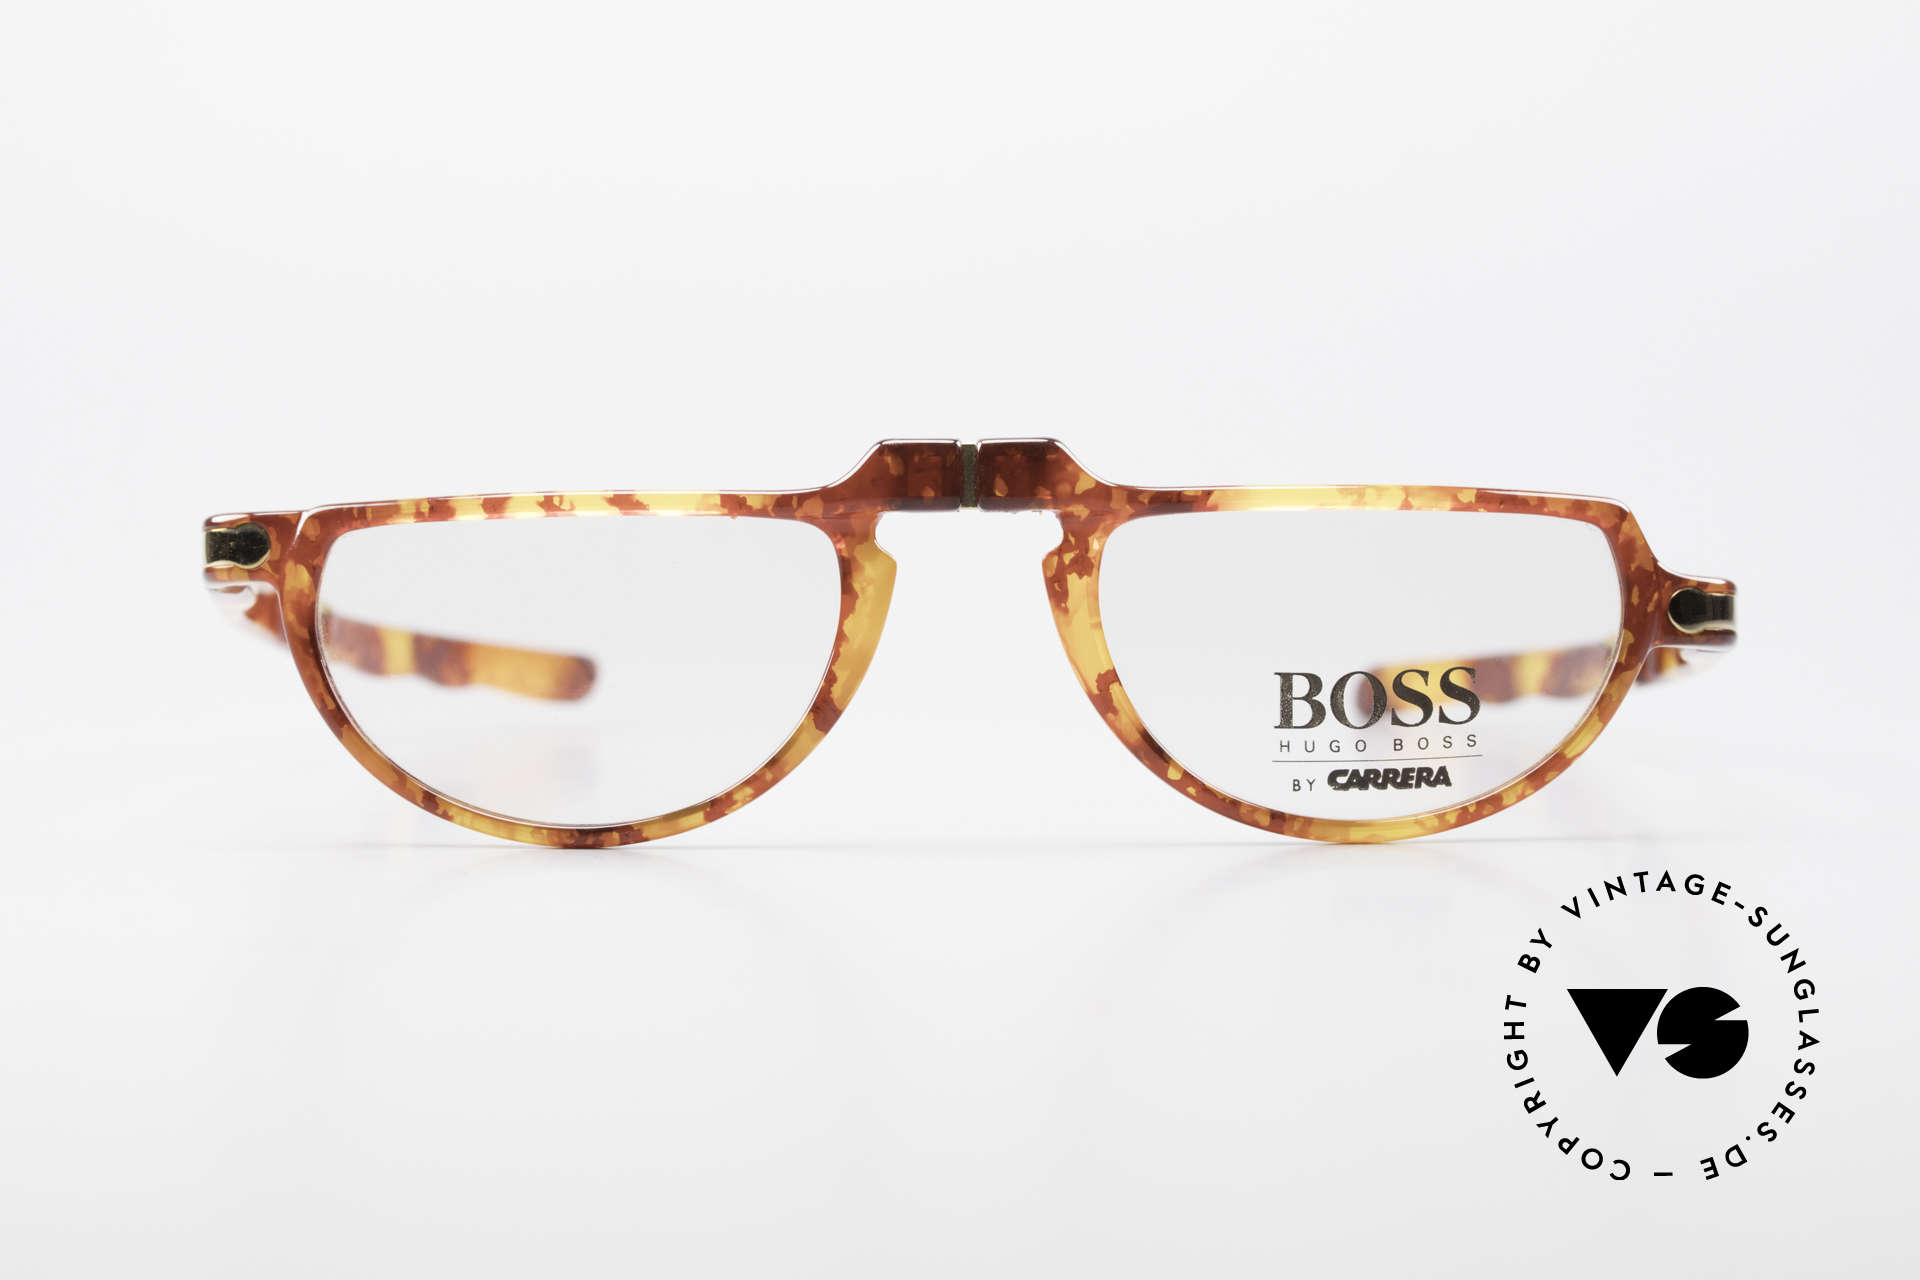 BOSS 5103 90's Folding Reading Glasses, full name: Hugo Boss by Carrera 5103, 13, 49-21, 145, Made for Men and Women